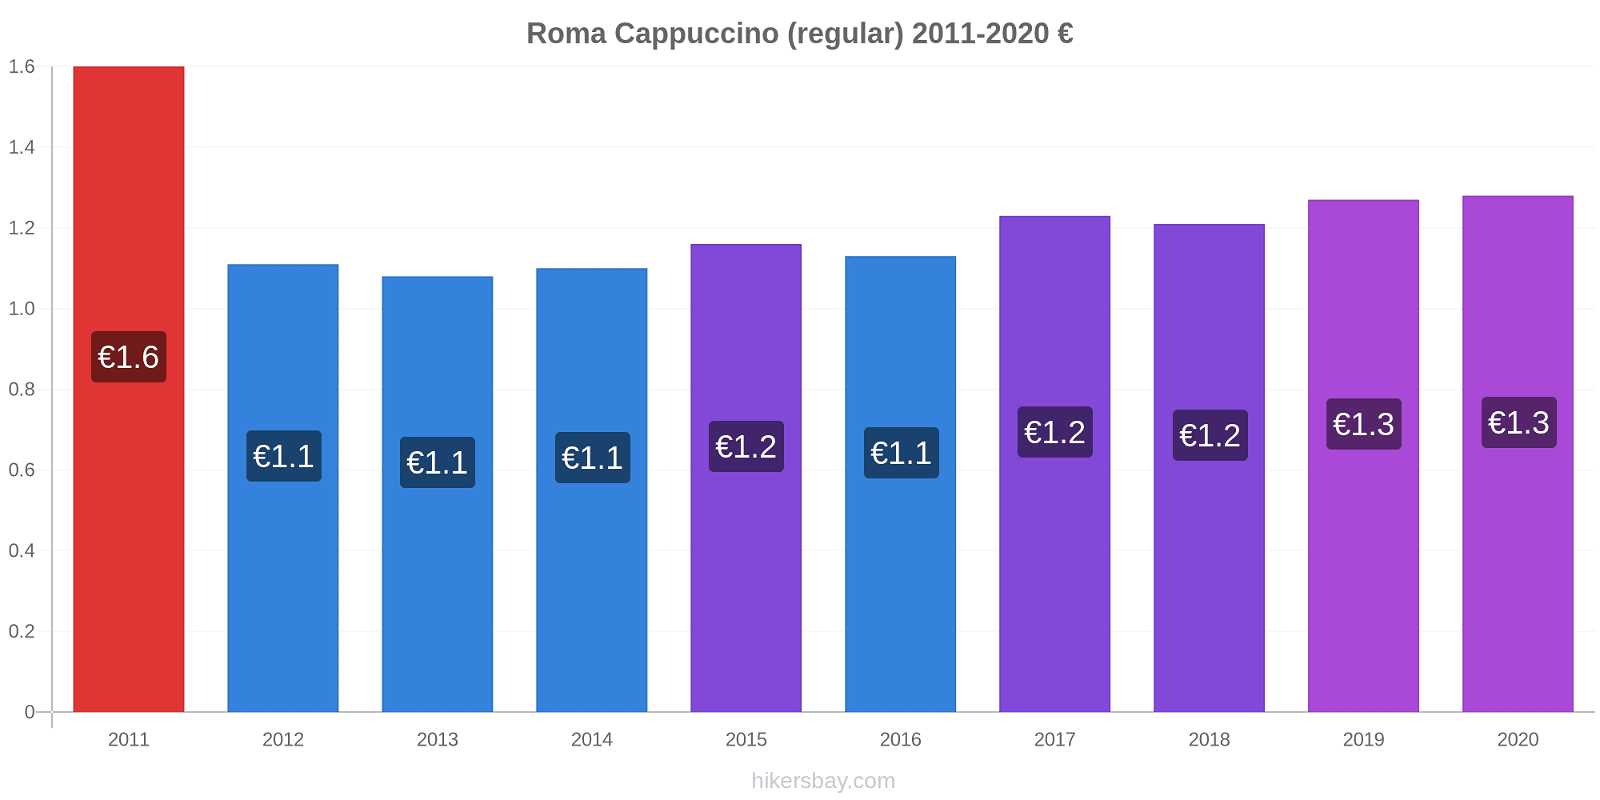 Roma variação de preço Capuccino (regular) hikersbay.com